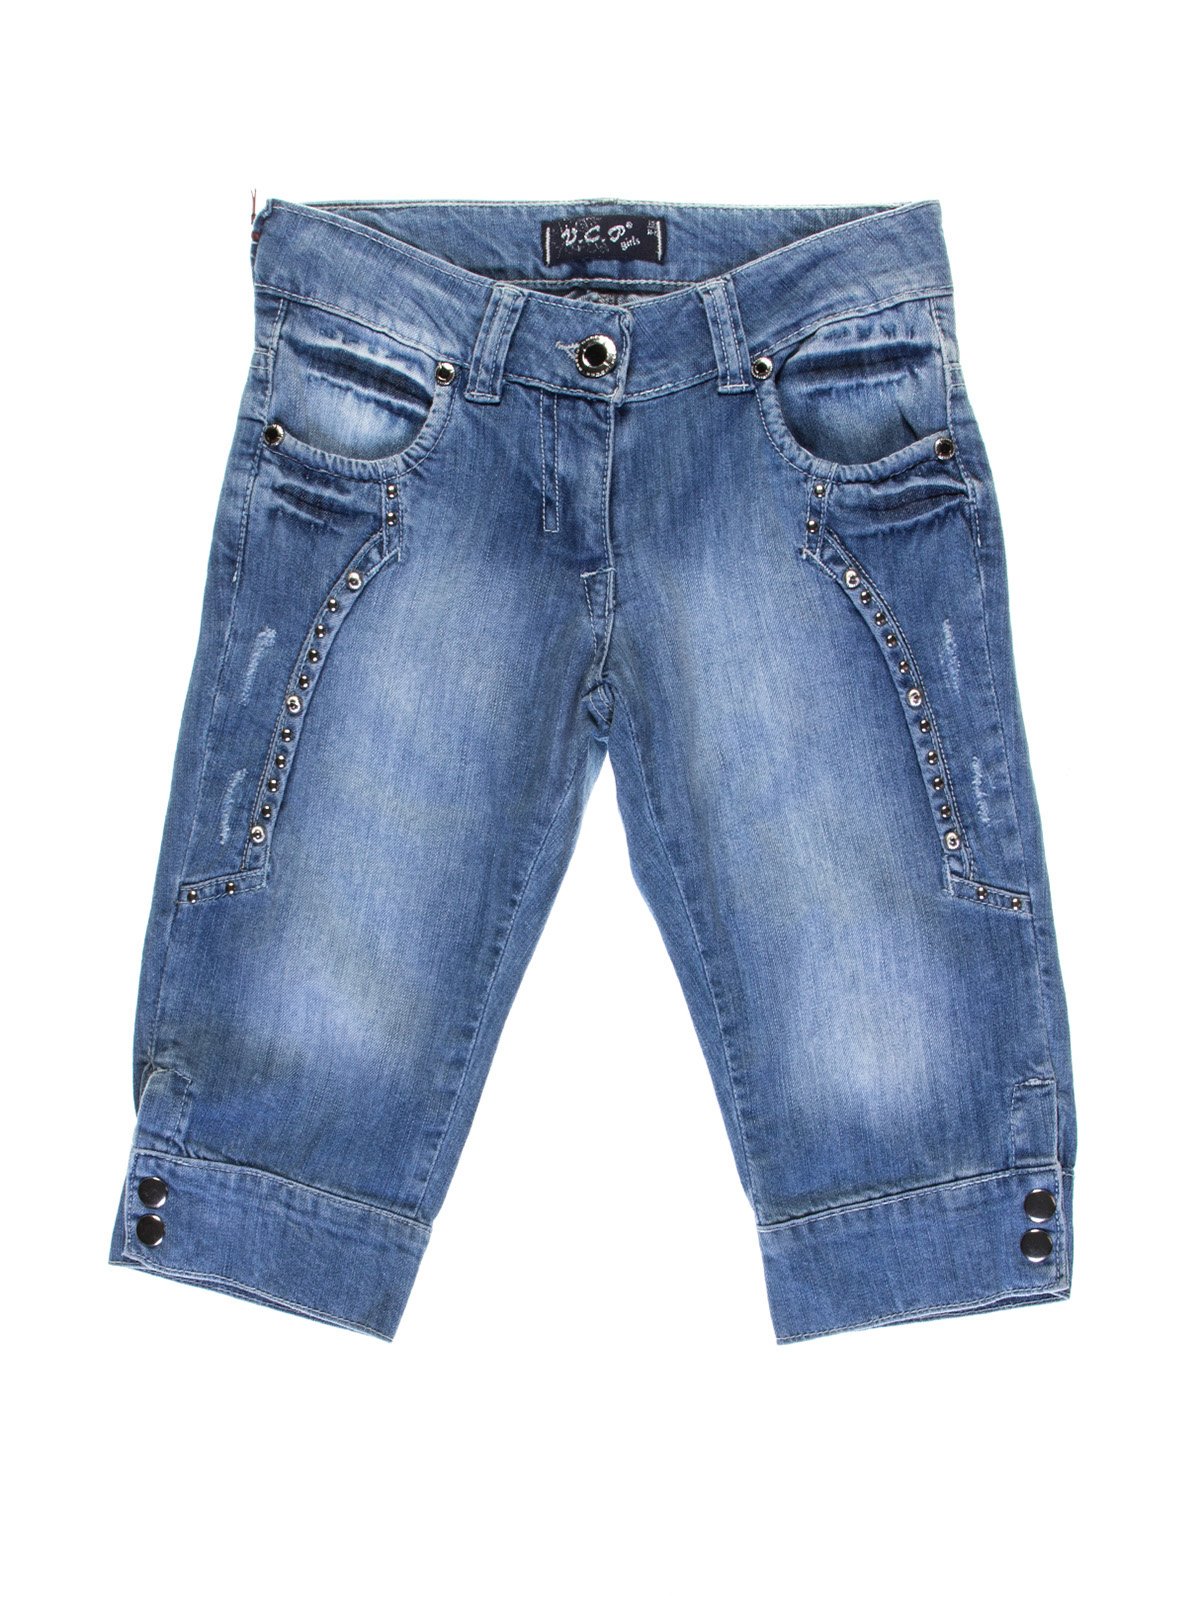 Капри синие джинсовые с эффектом потертых | 1076955